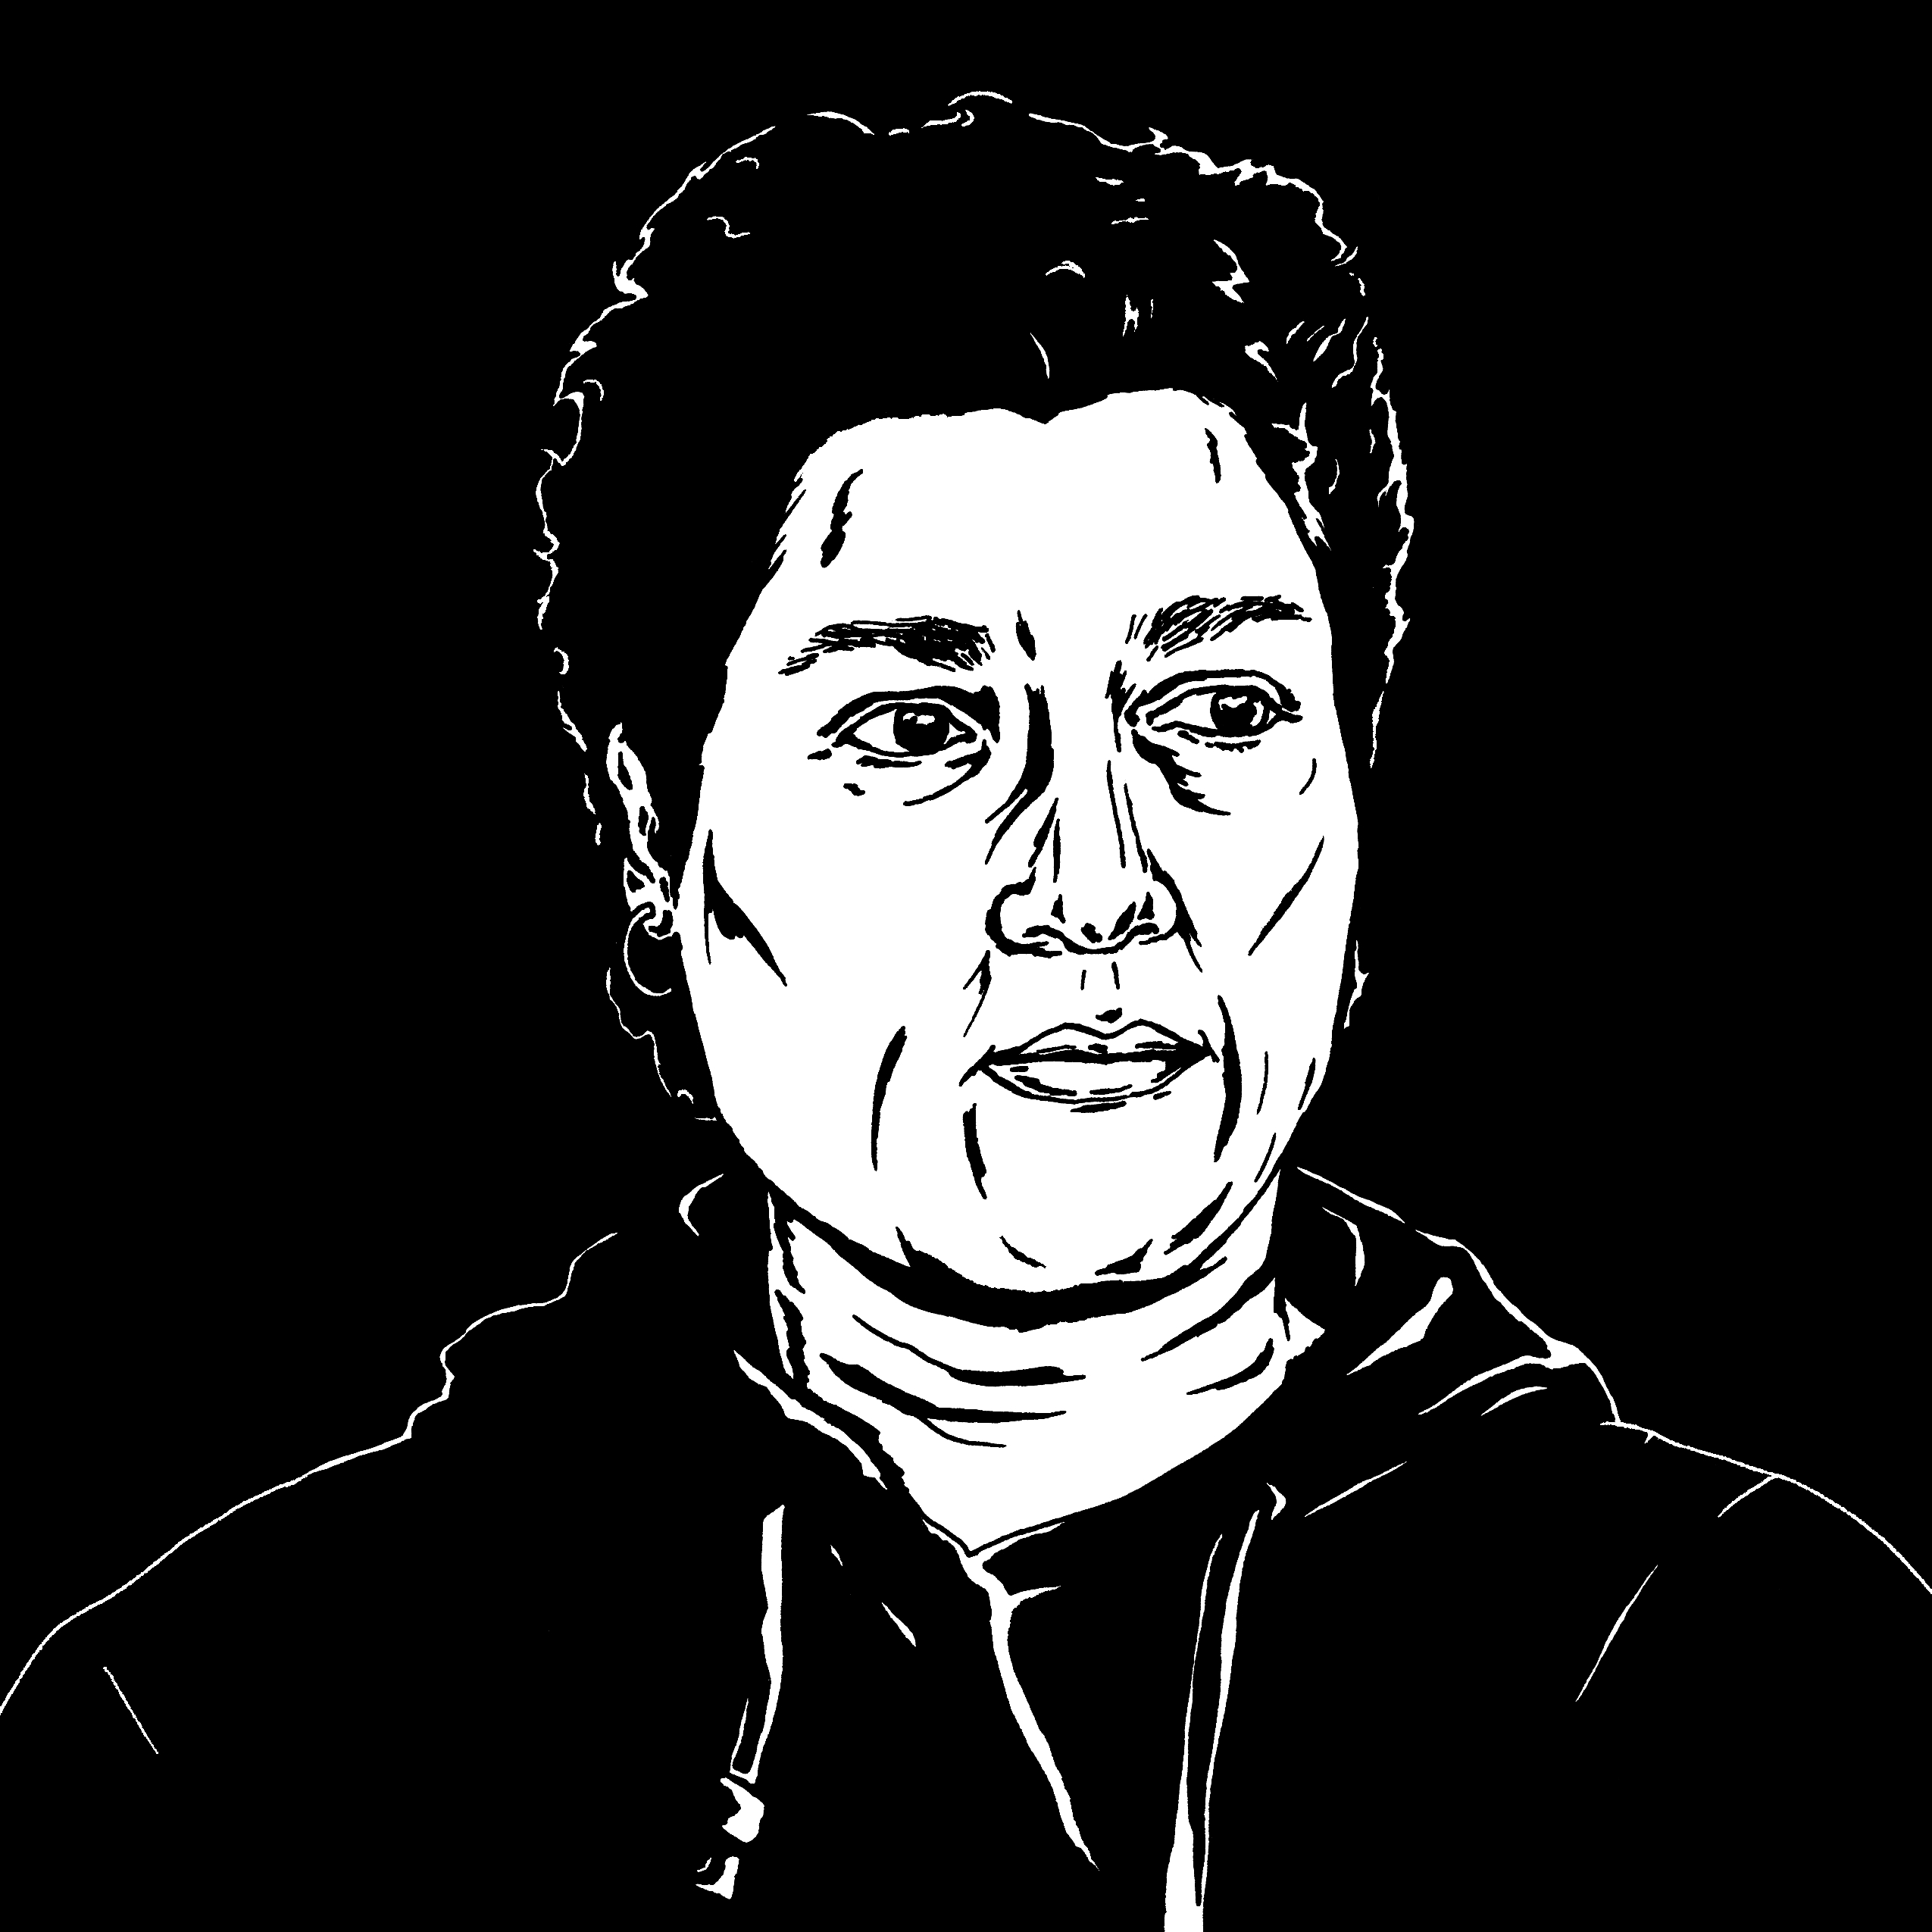 Huma Bhabha black and white portrait illustration